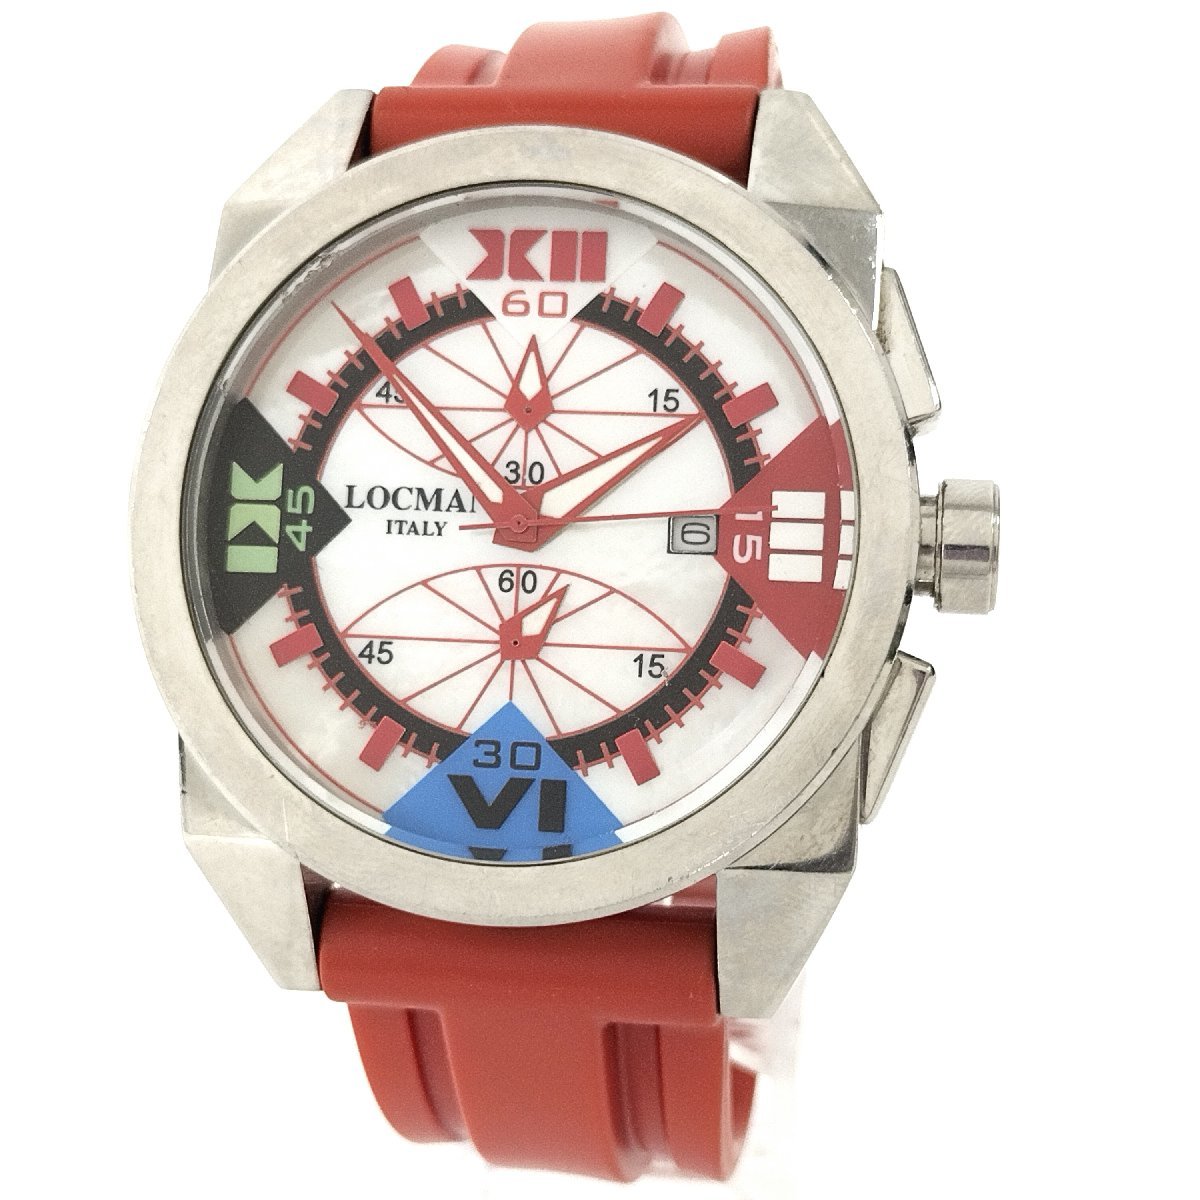 ●現状品 LOCMAN ロックマン R.160 クロノグラフ メンズ腕時計 シェル文字盤 クォーツ デイト レッド/赤 中古[ne]u363